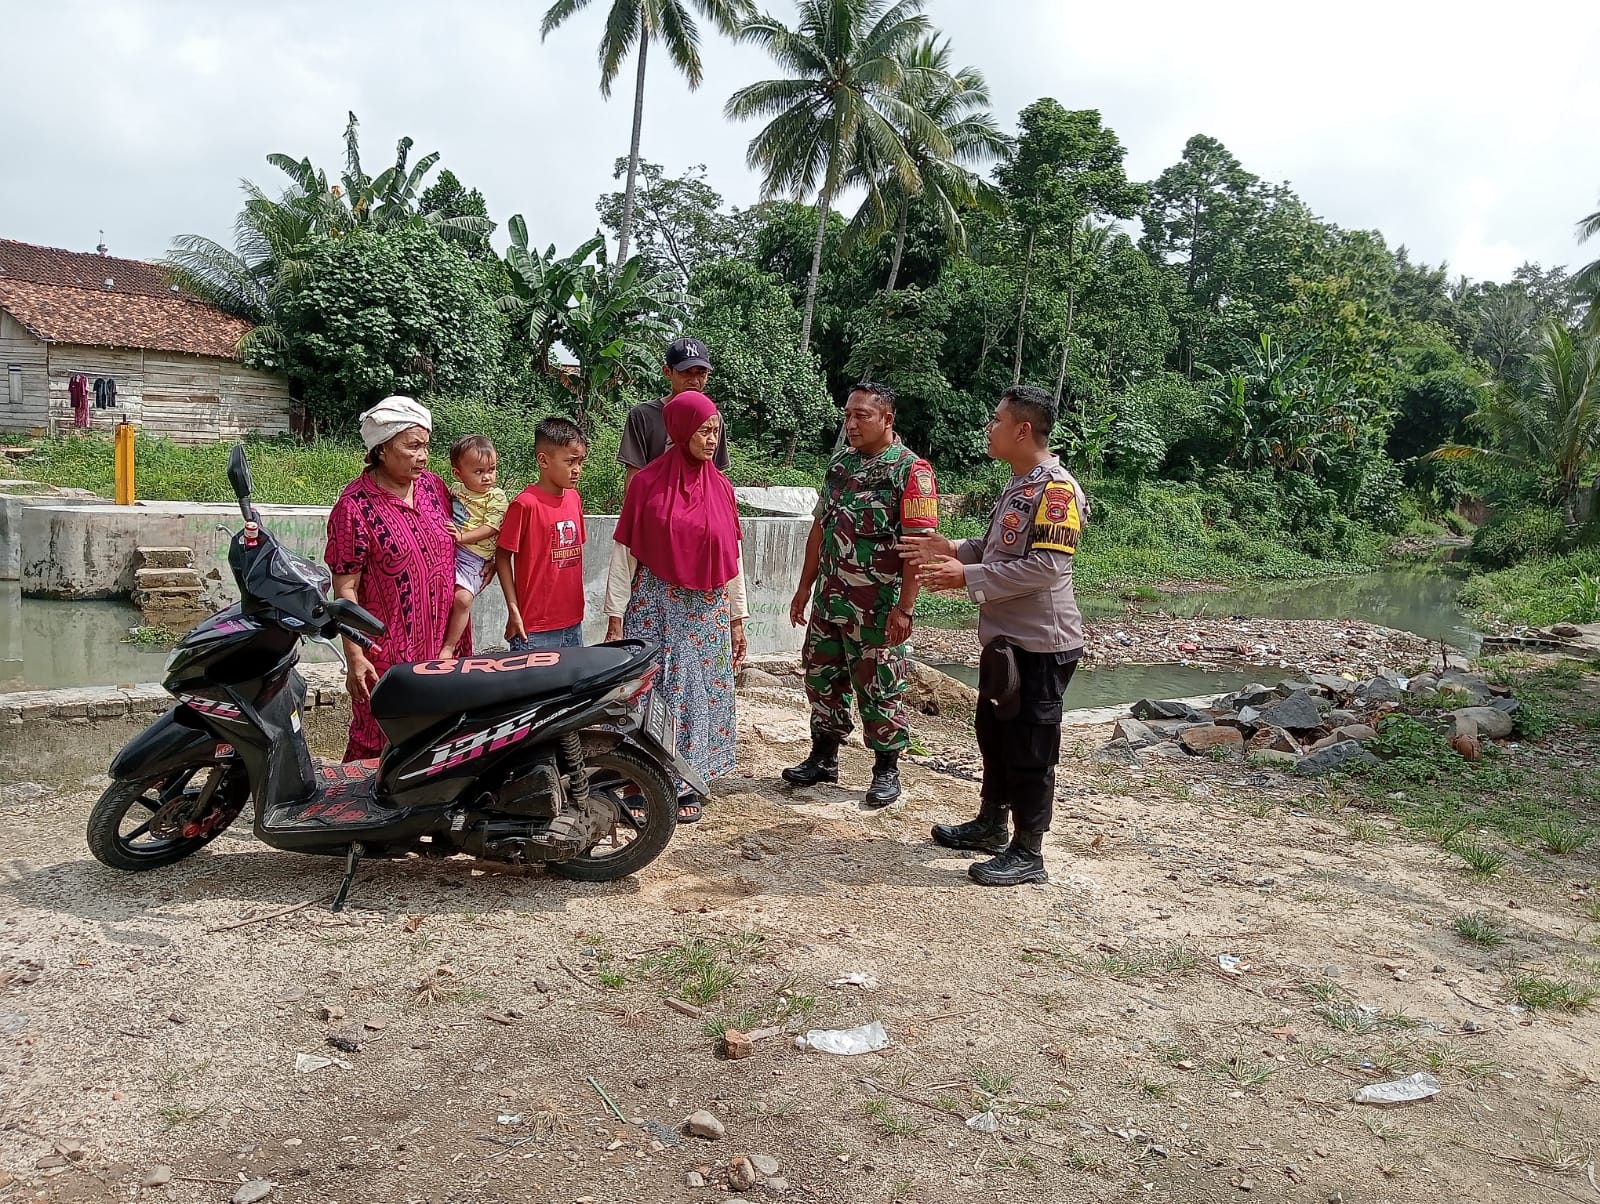 Marak Kasus Tenggelam, Bhabinkamtibmas Aktif Kampanye Pencegahan di Desa Binaan